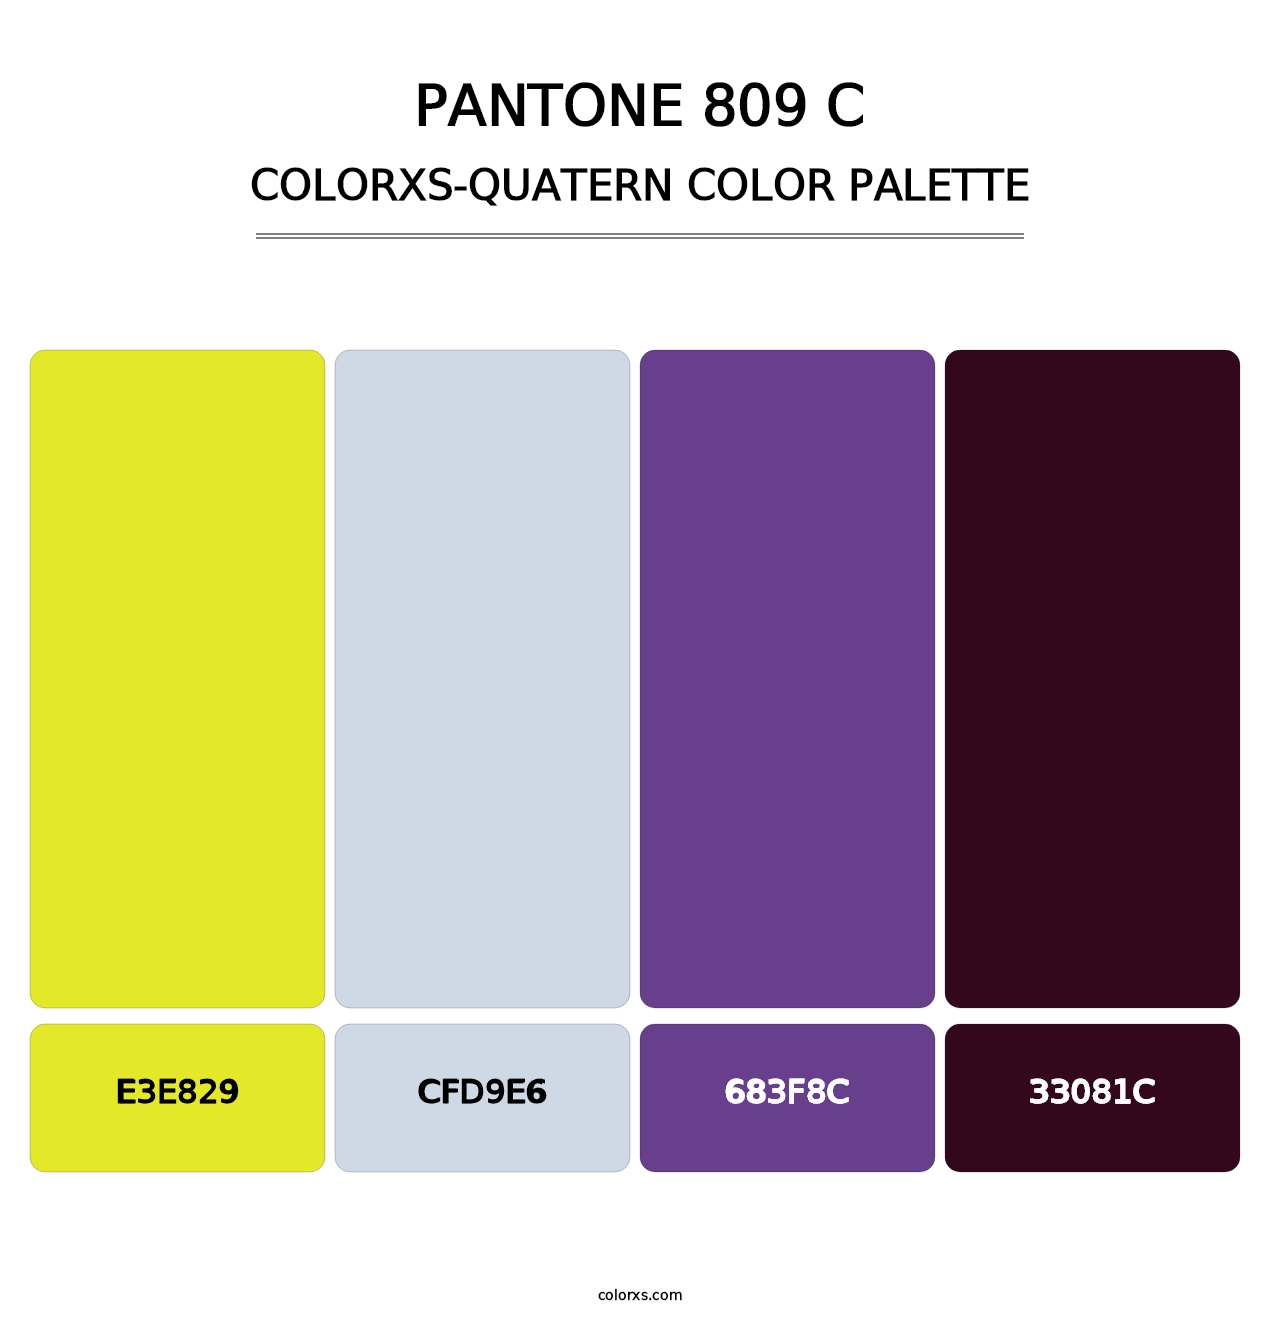 PANTONE 809 C - Colorxs Quatern Palette